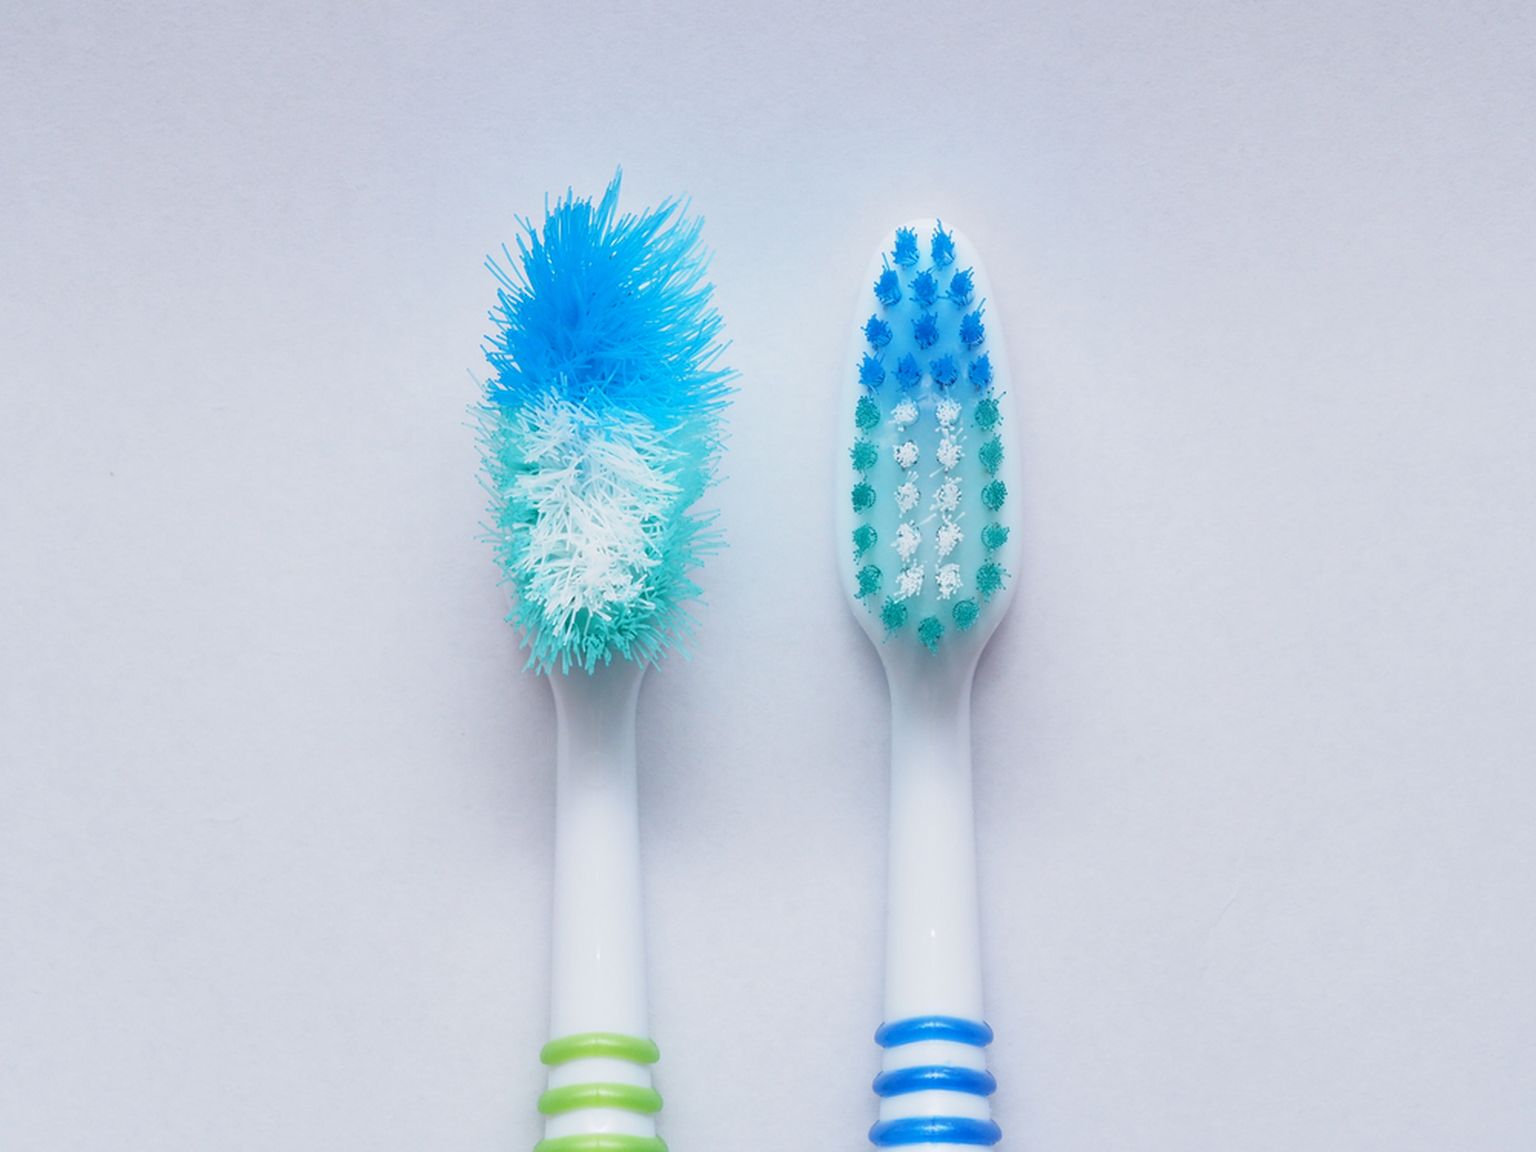 Kui su hambaharjatopsis kükitab selline paljukannatanud tutt nagu vasakul, on aeg kiiremas korras uus hambahari hankida.